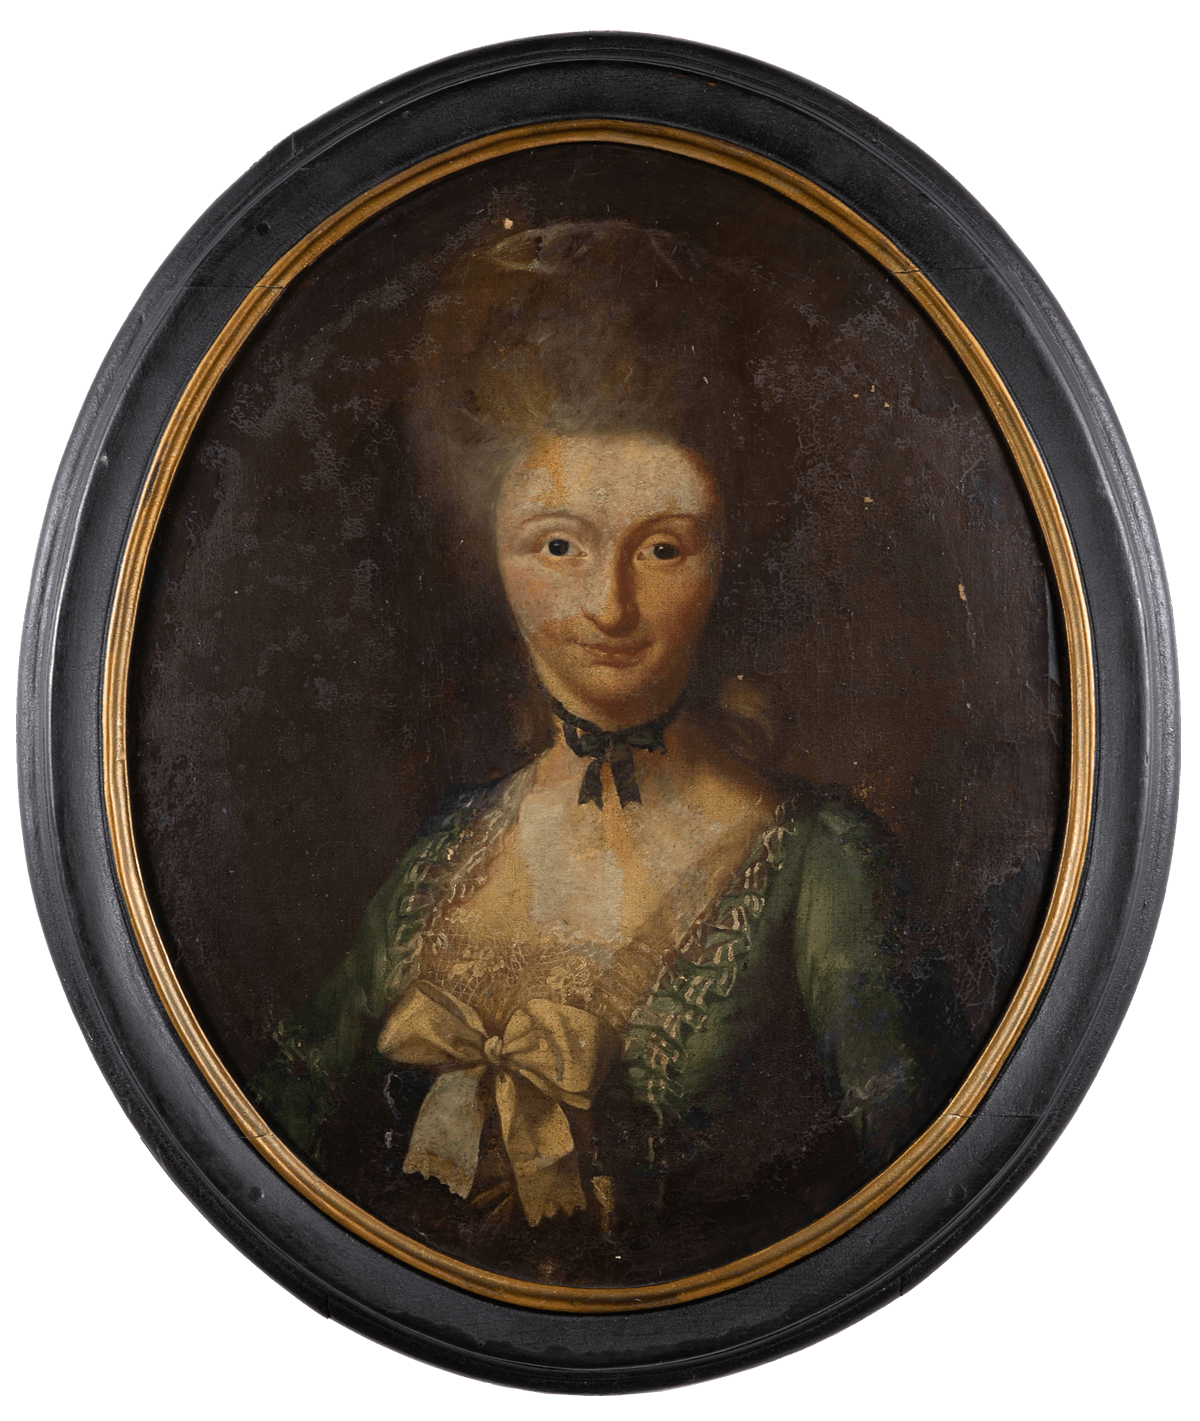 Portret van Maria Cunegonda Van Saksen, prinses van Polen - Olieverf op doek, langdurige bruikleen uit de collectie van mevr. J. Tacken- Van Wessem